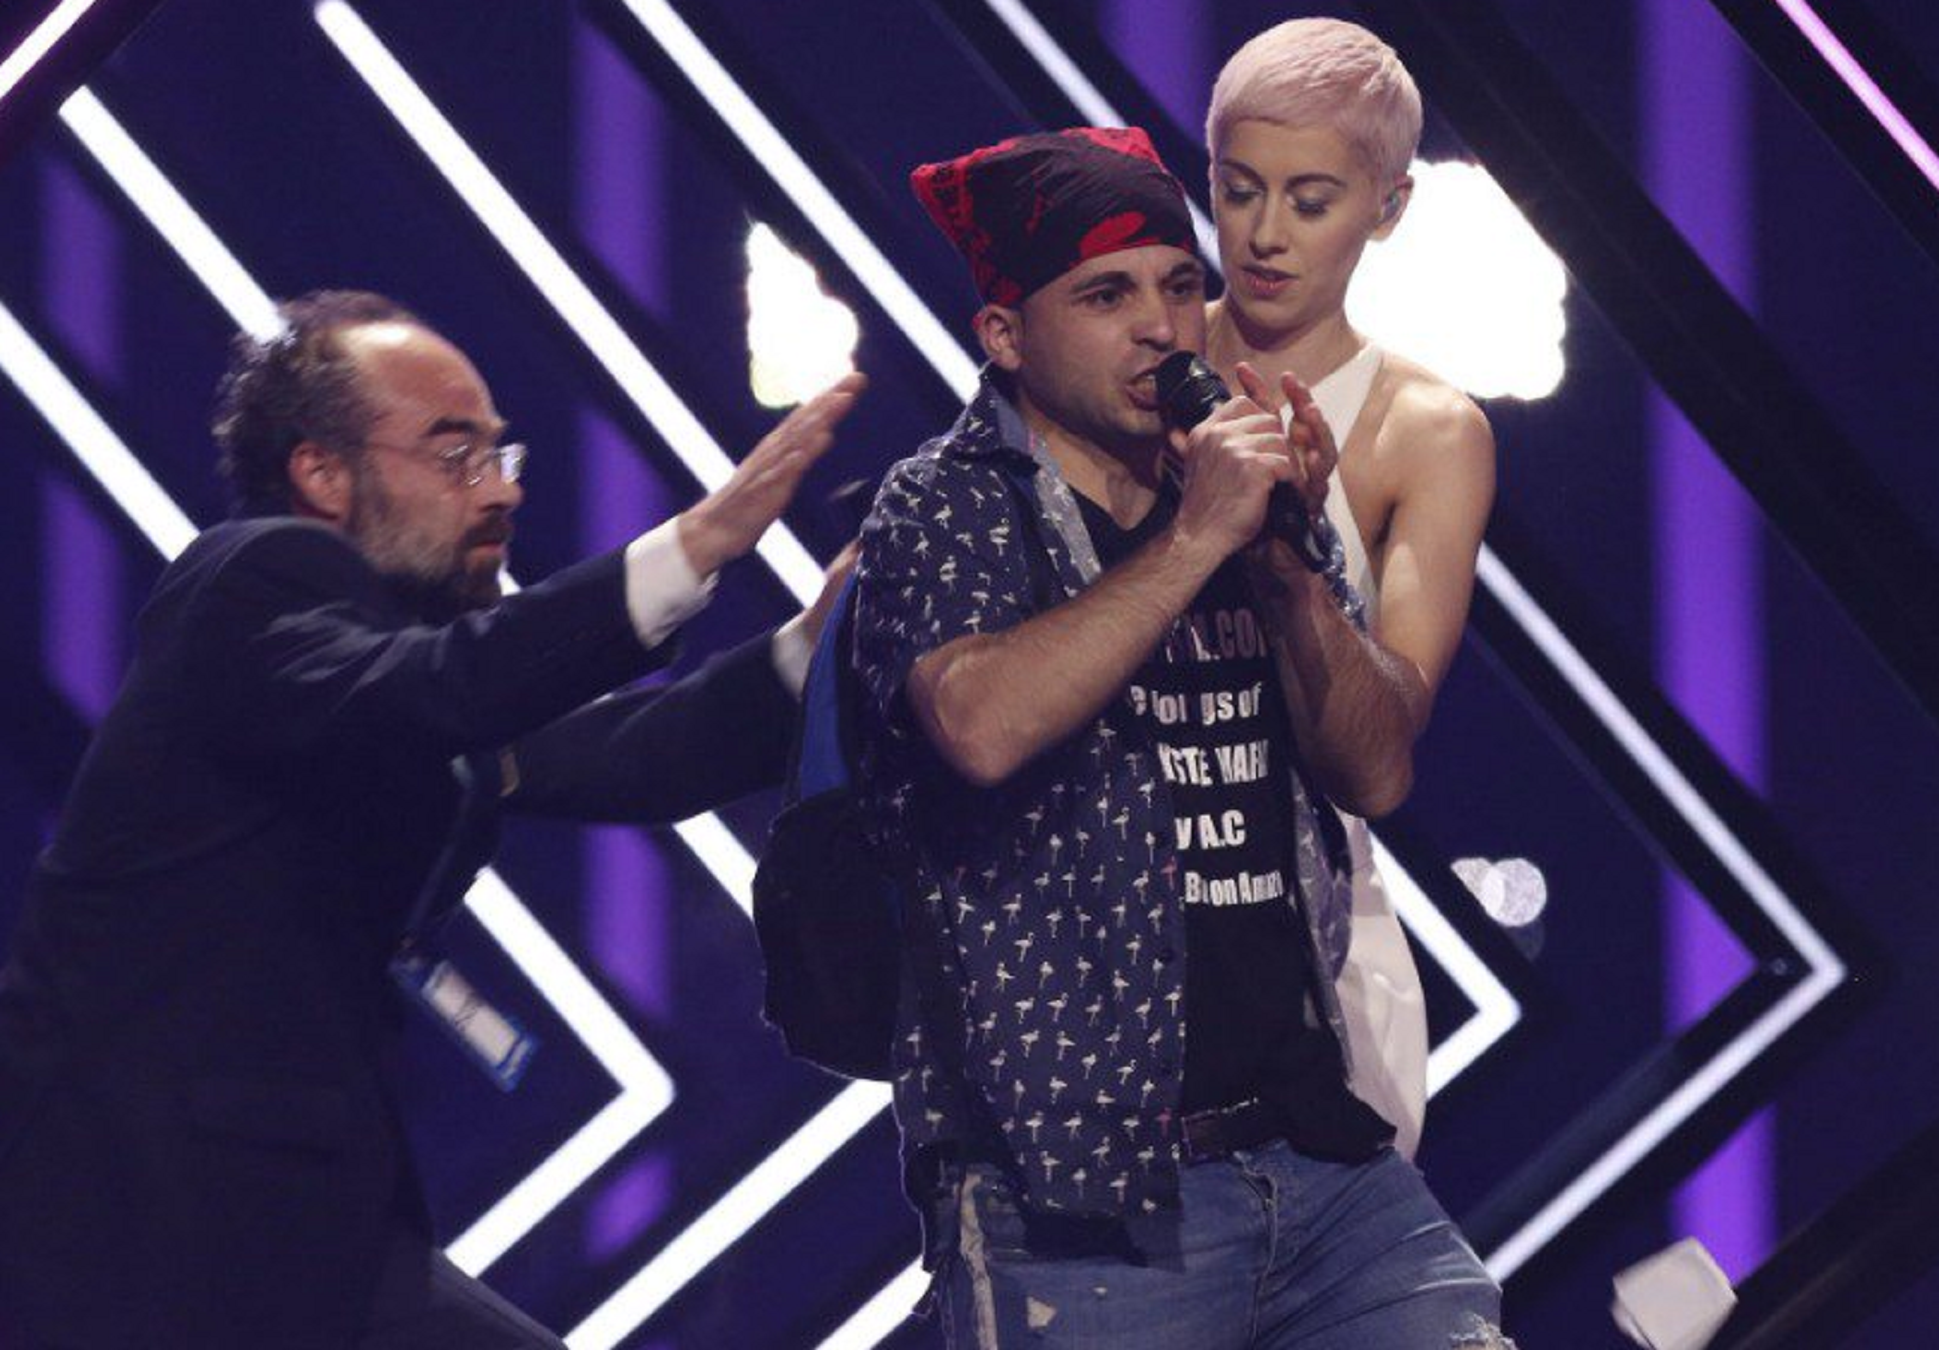 Un espontani irromp a Eurovisió... i crida 'Puigdemont freedom'? La xarxa bull